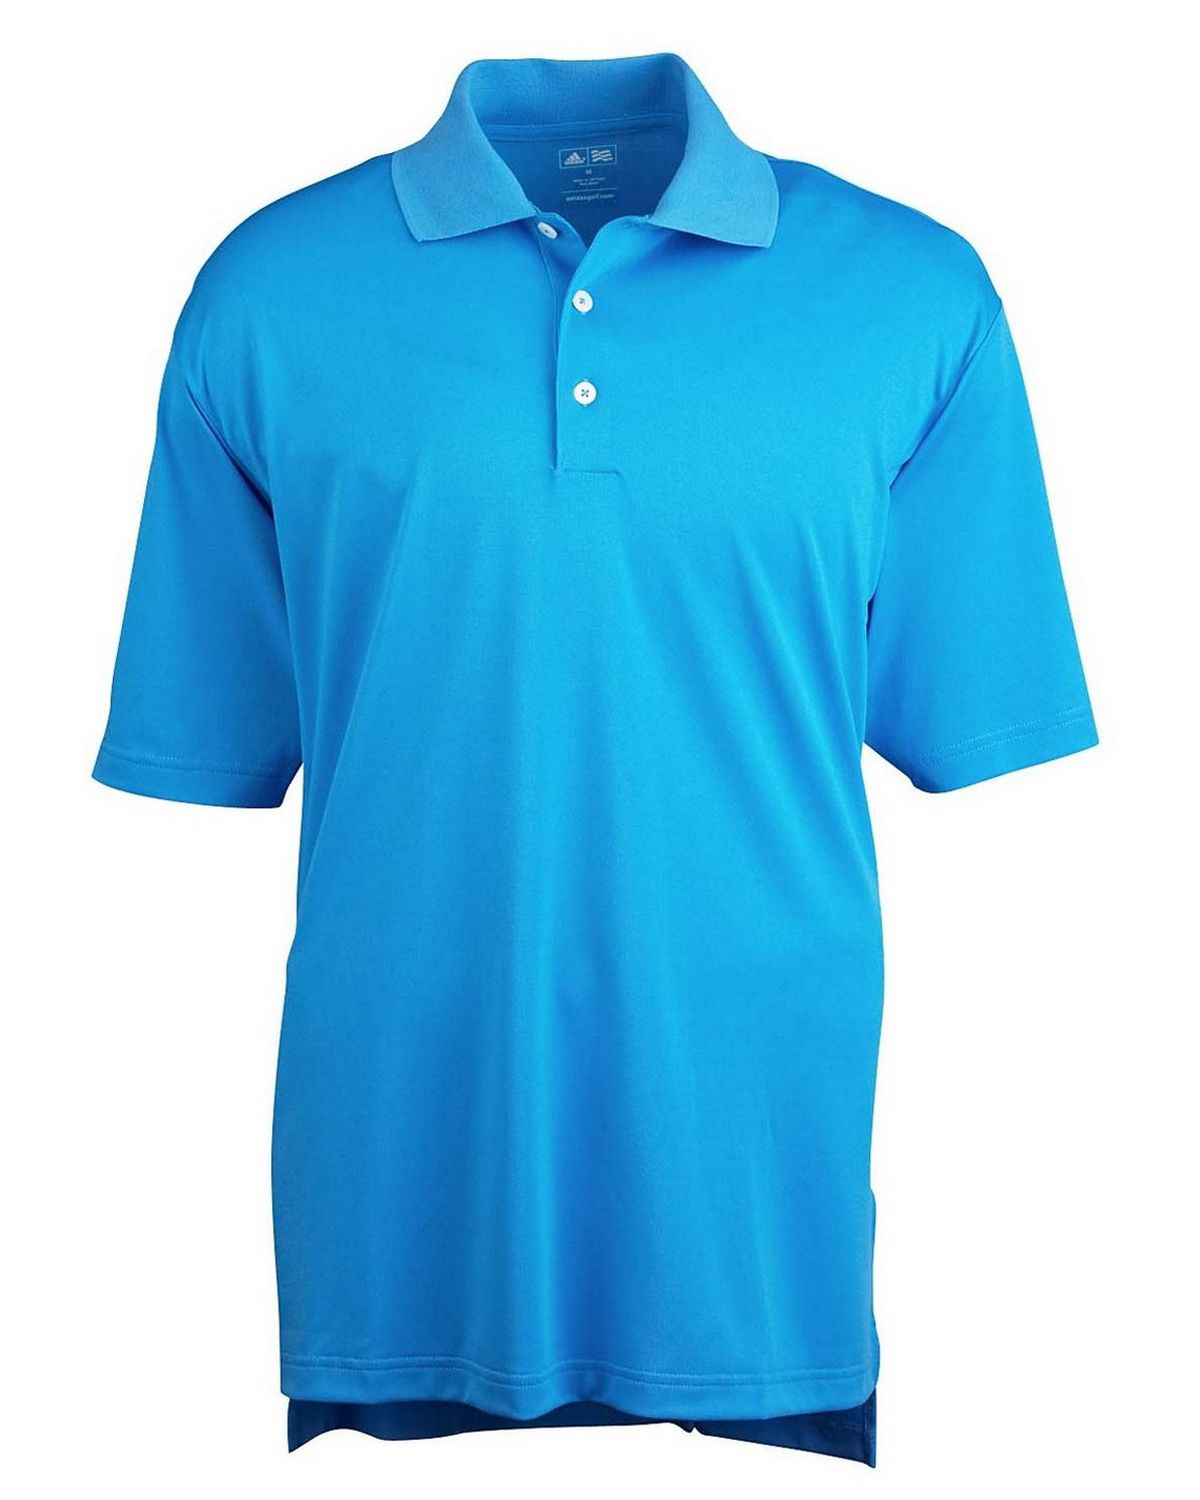 Adidas Golf A121 Men’s ClimaLite Short-Sleeve Pique Polo